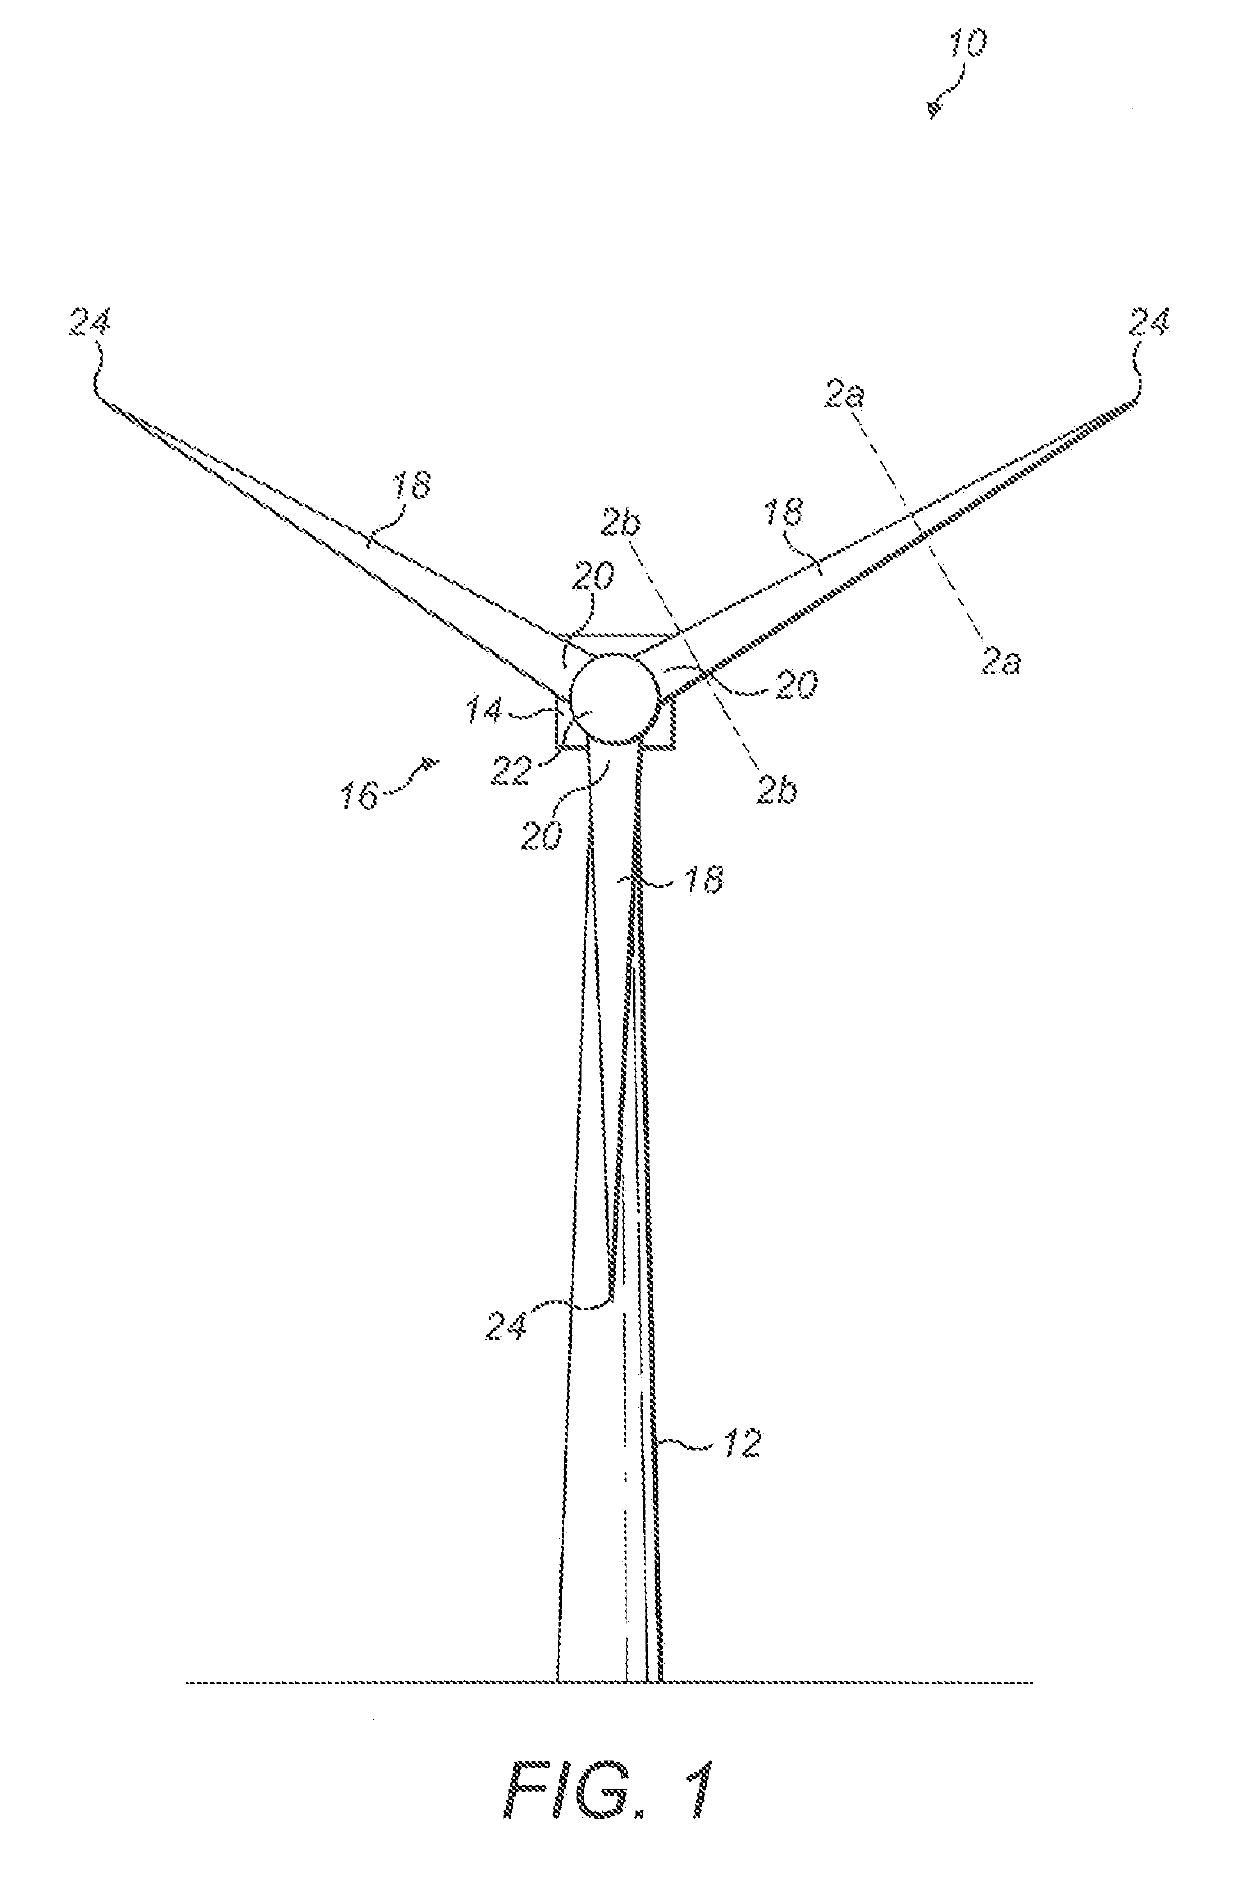 Manufacture of a wind turbine blade